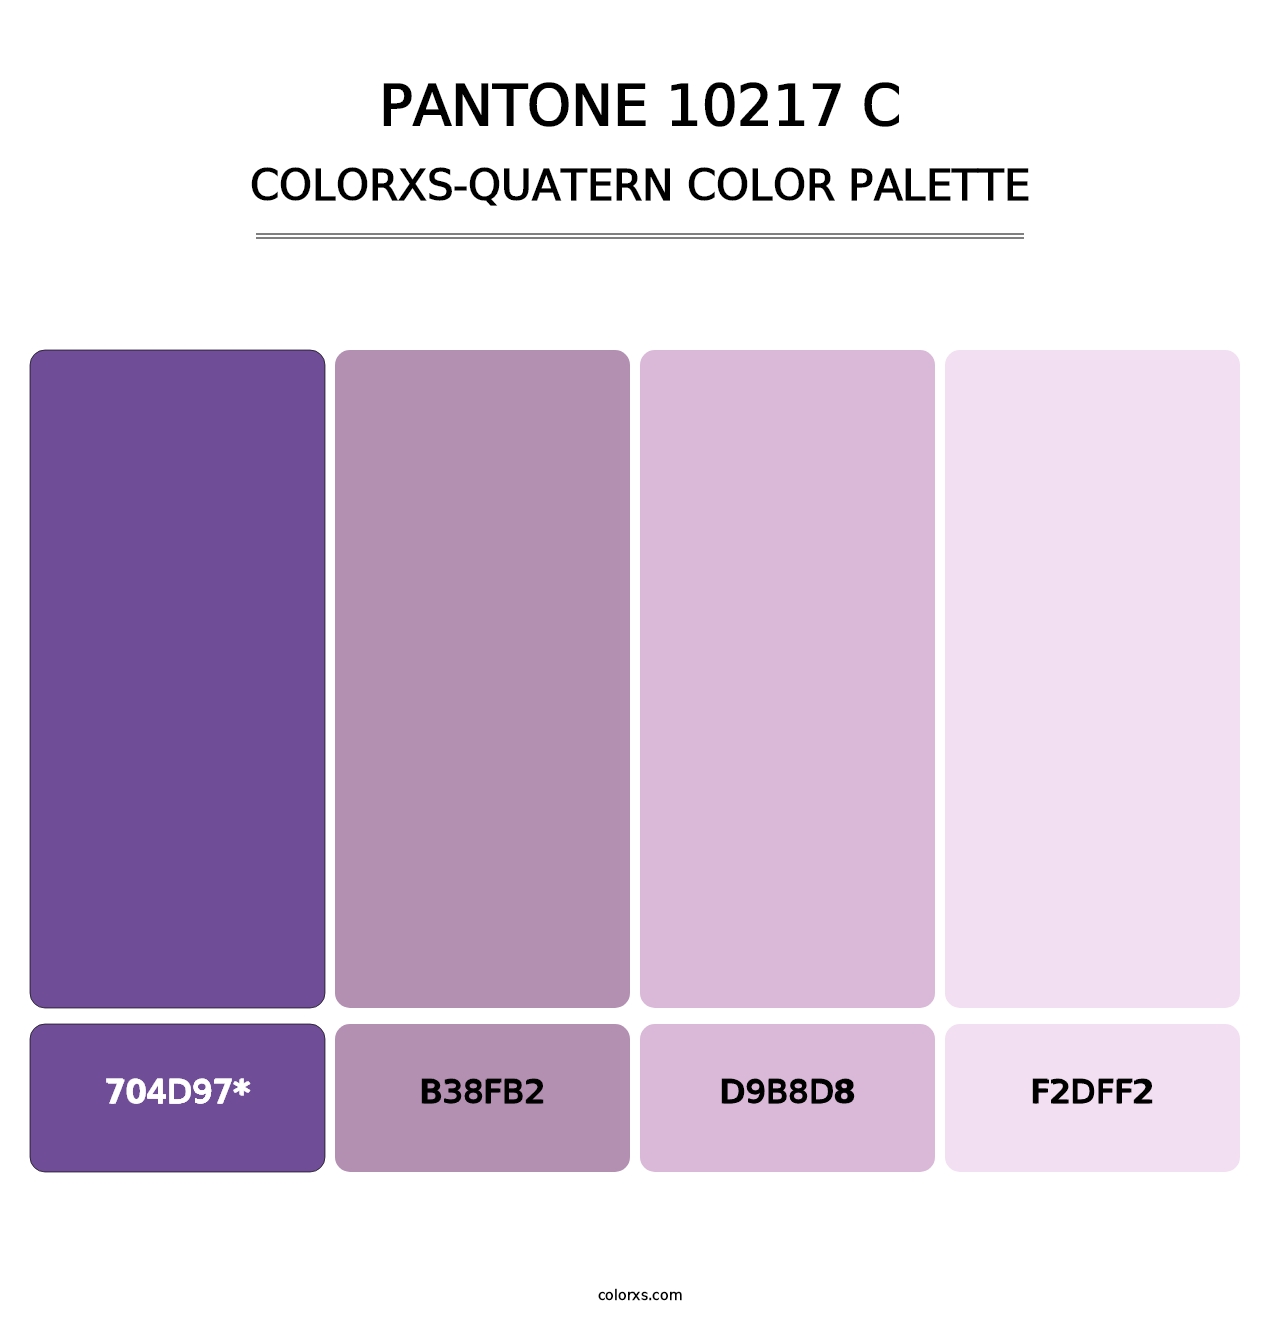 PANTONE 10217 C - Colorxs Quad Palette